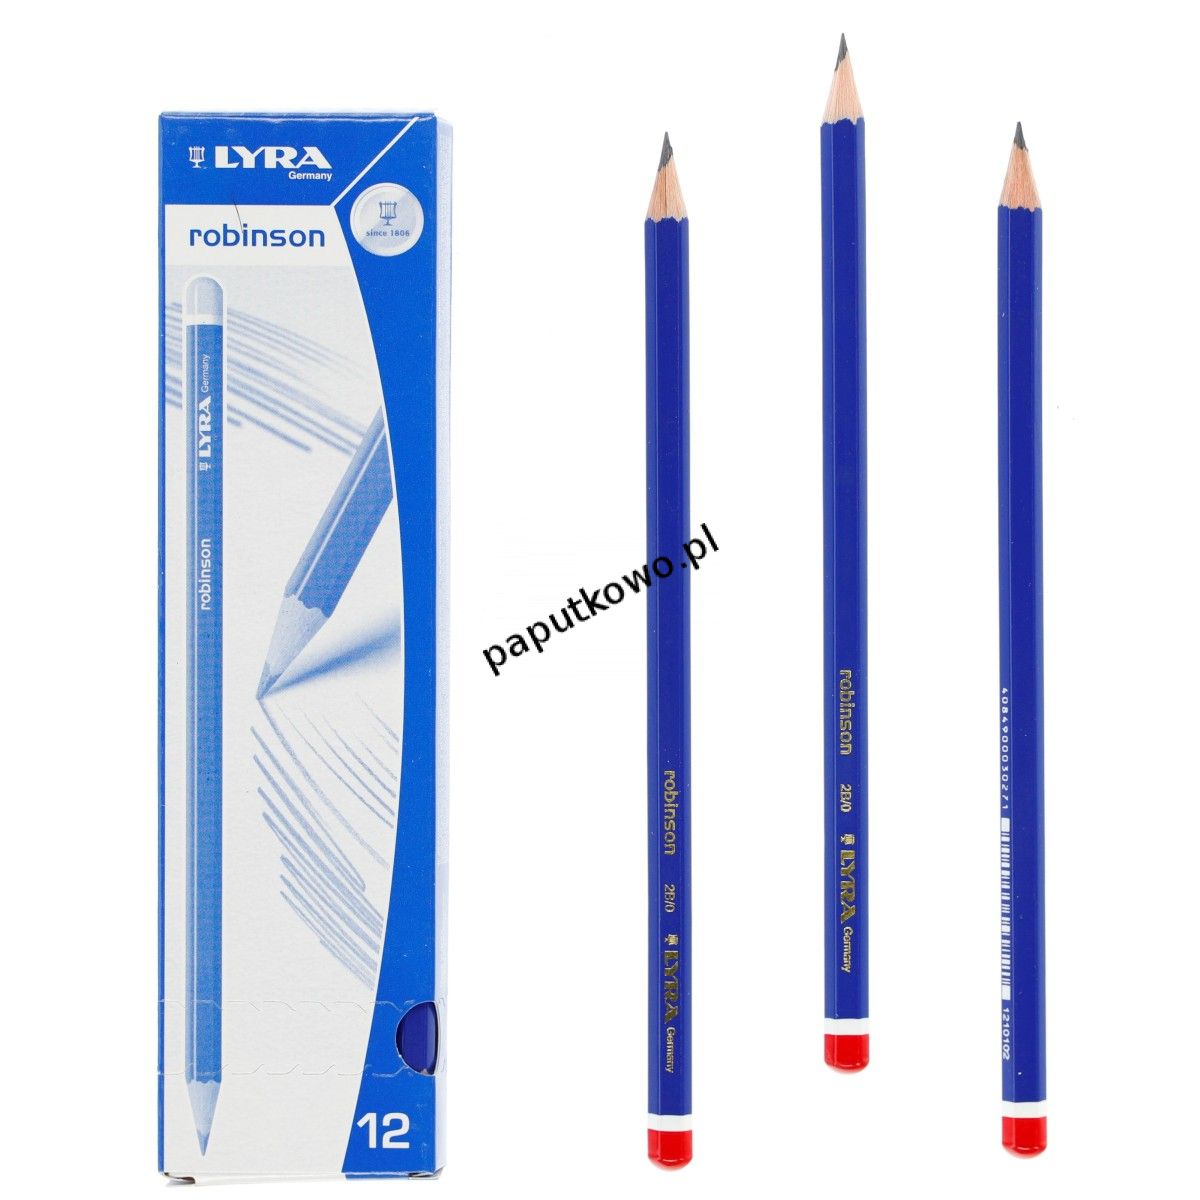 Ołówek techniczny Lyra Robinson (L1210102) 1